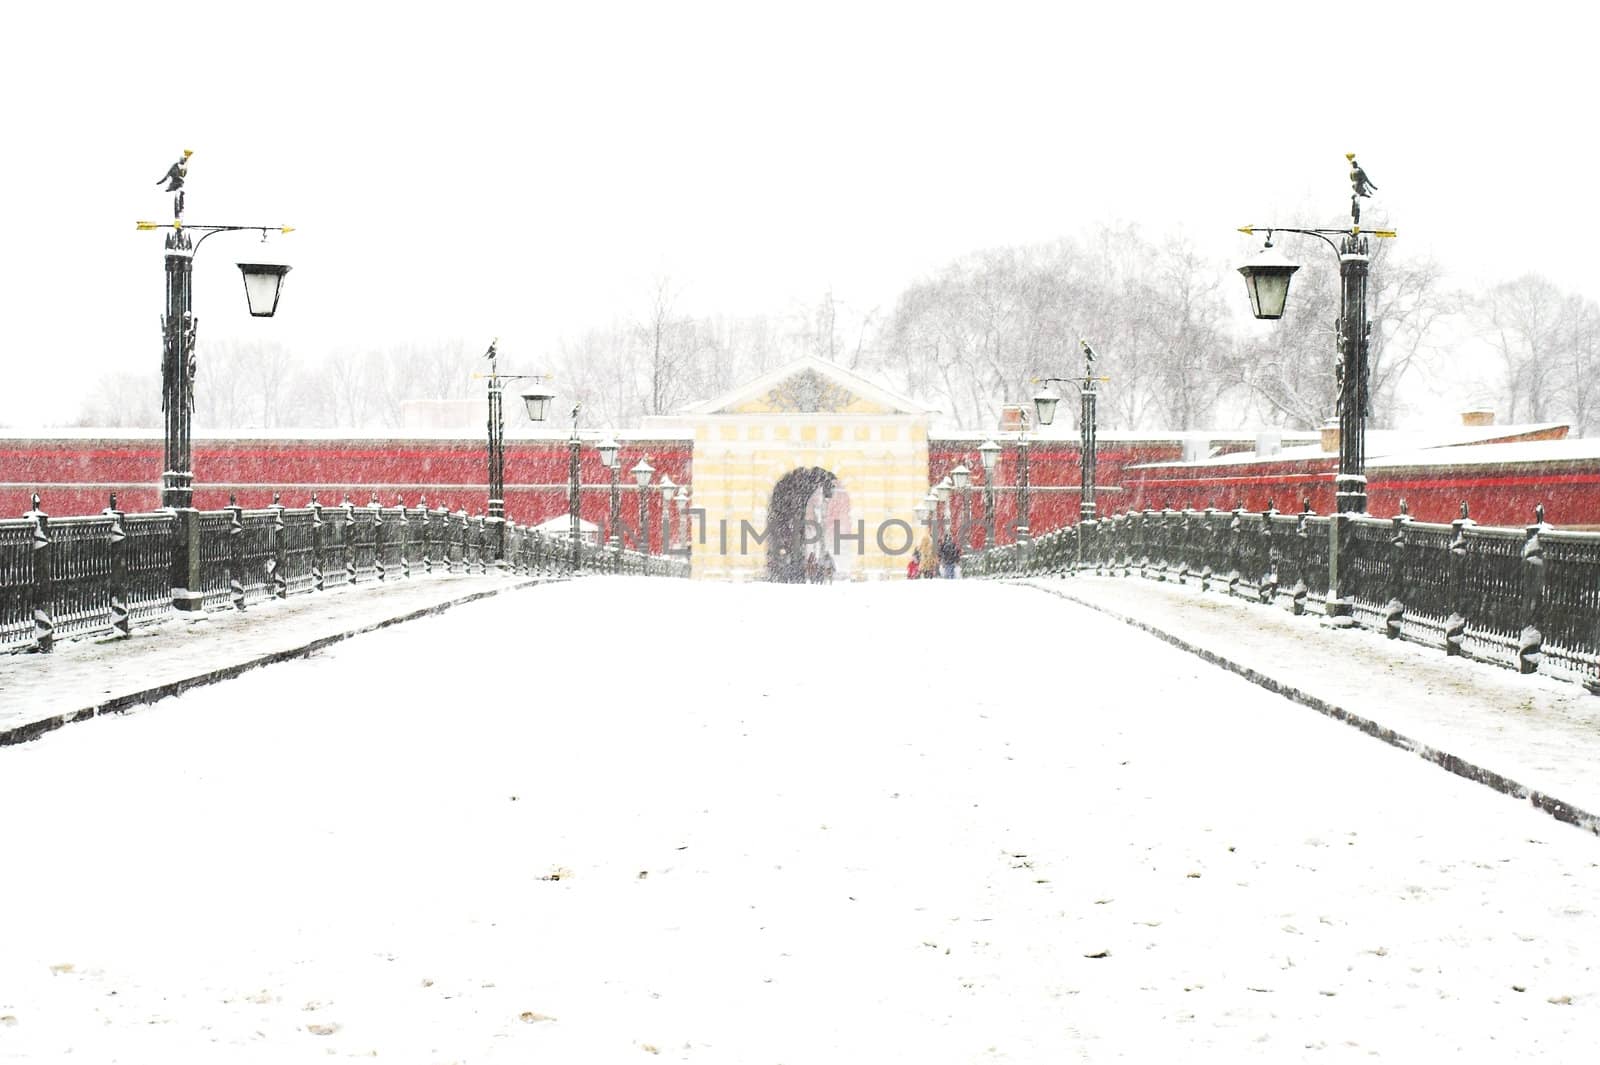 Bridge to John's Gates in Peter & Paul Fortress at snowfall in Saint Petersburg, Russia.